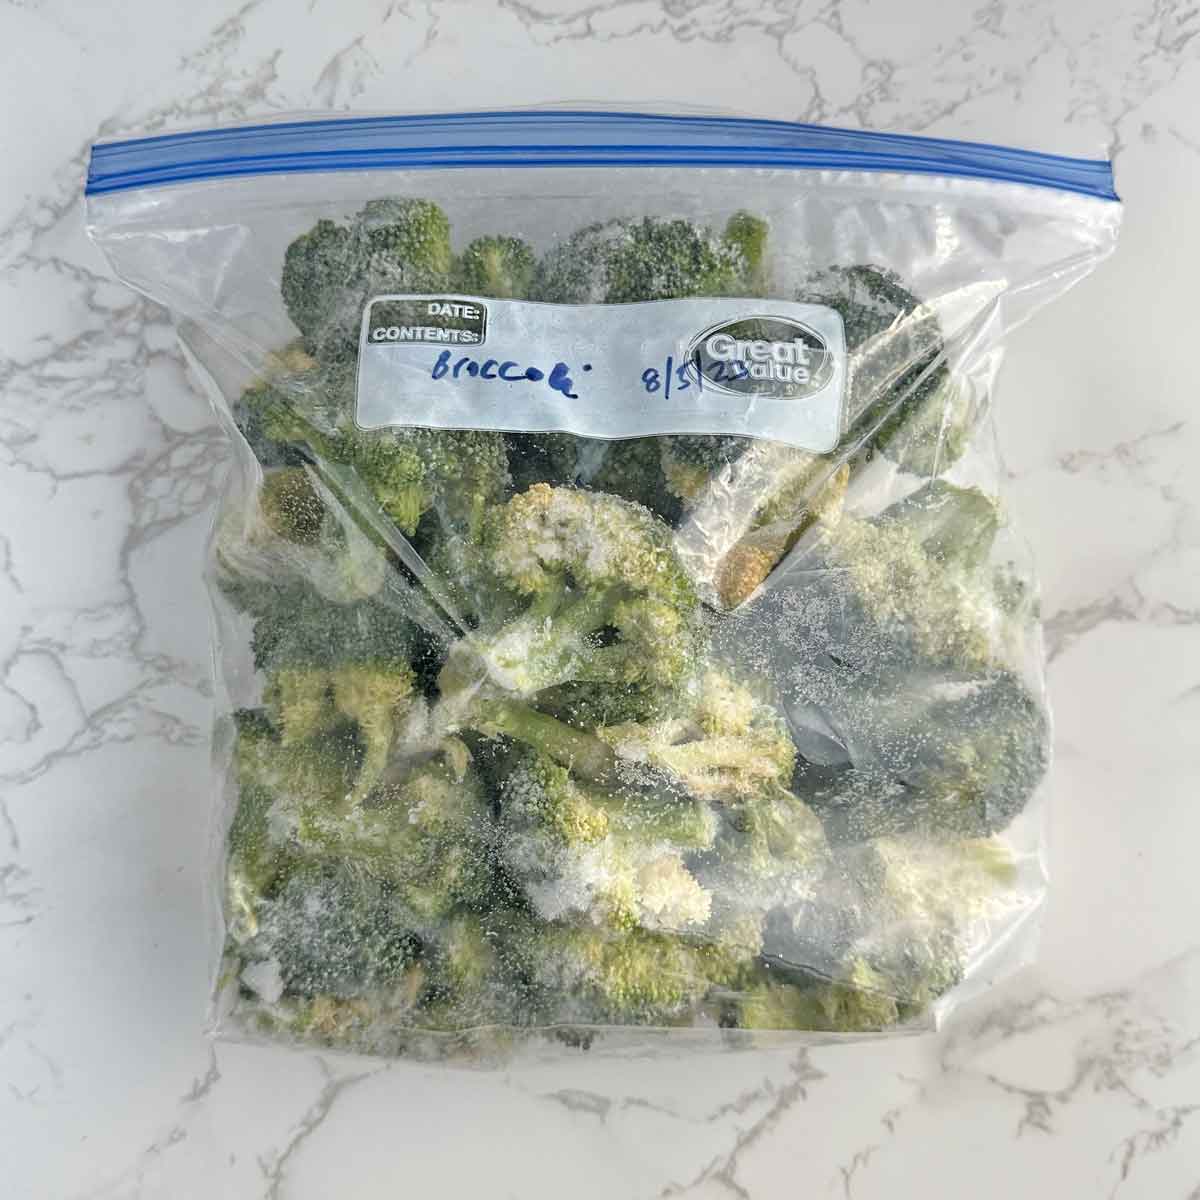 frozen broccoli florets in ziplock bag.